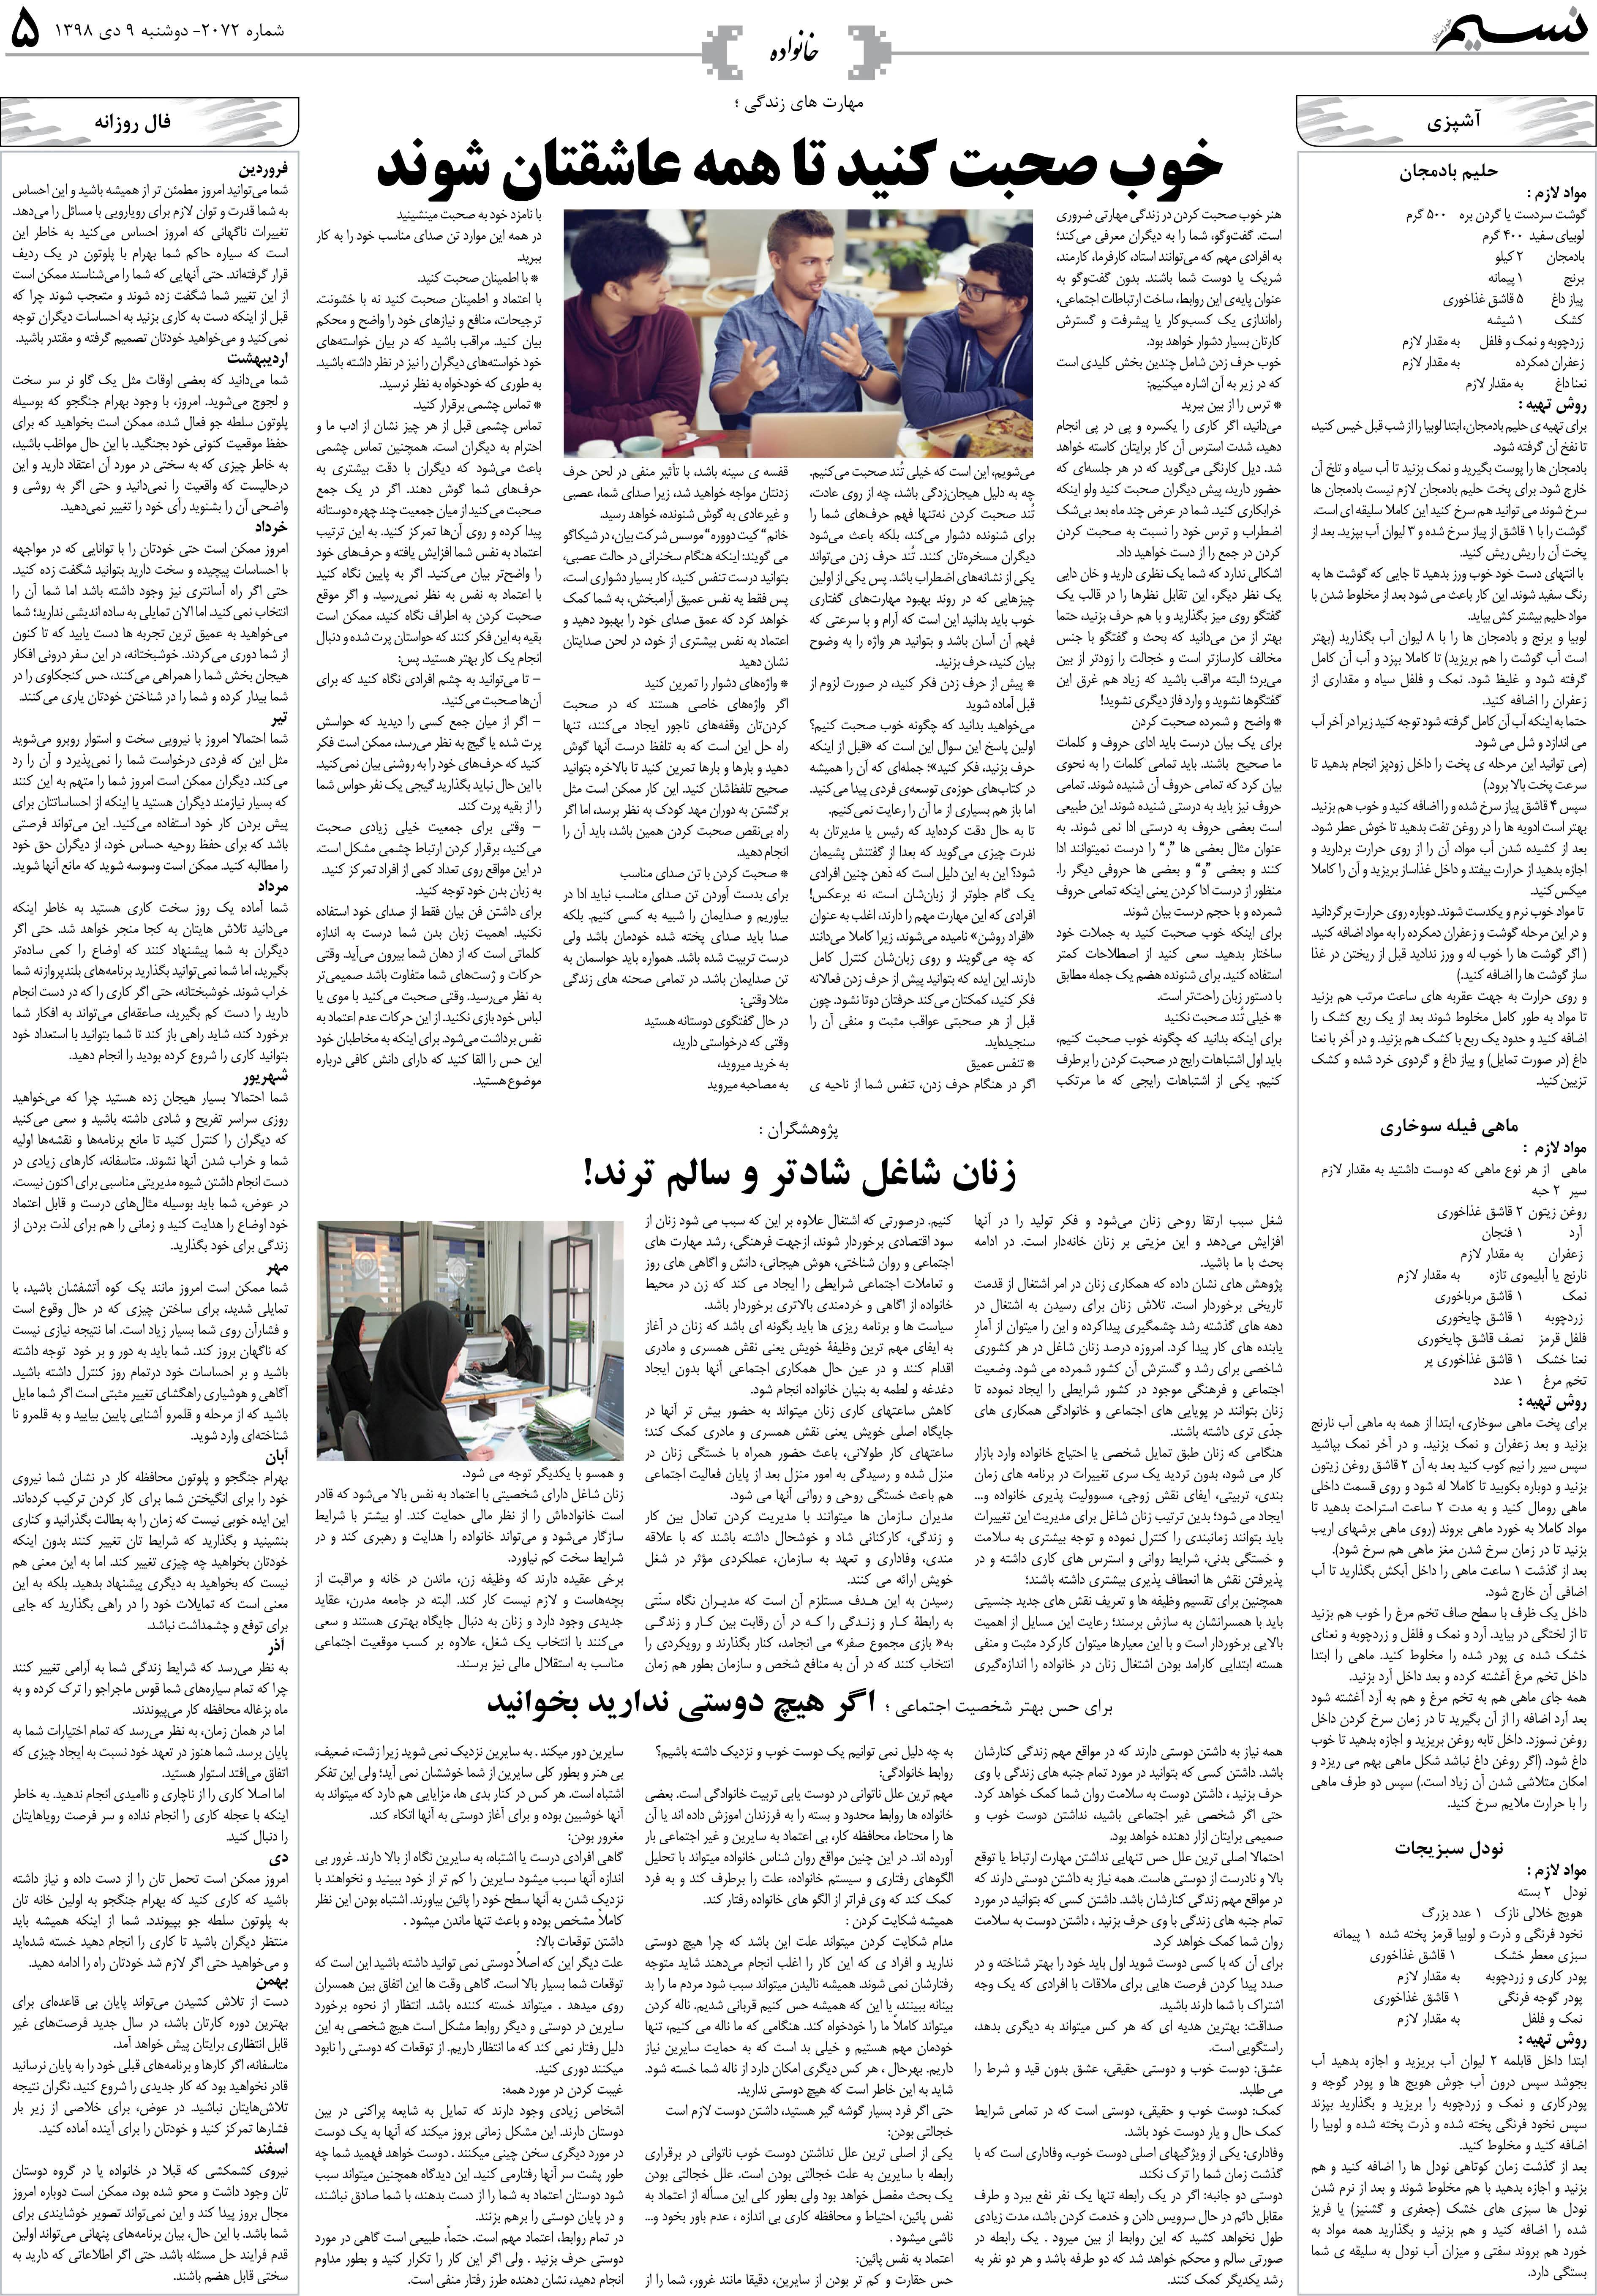 صفحه خانواده روزنامه نسیم شماره 2072